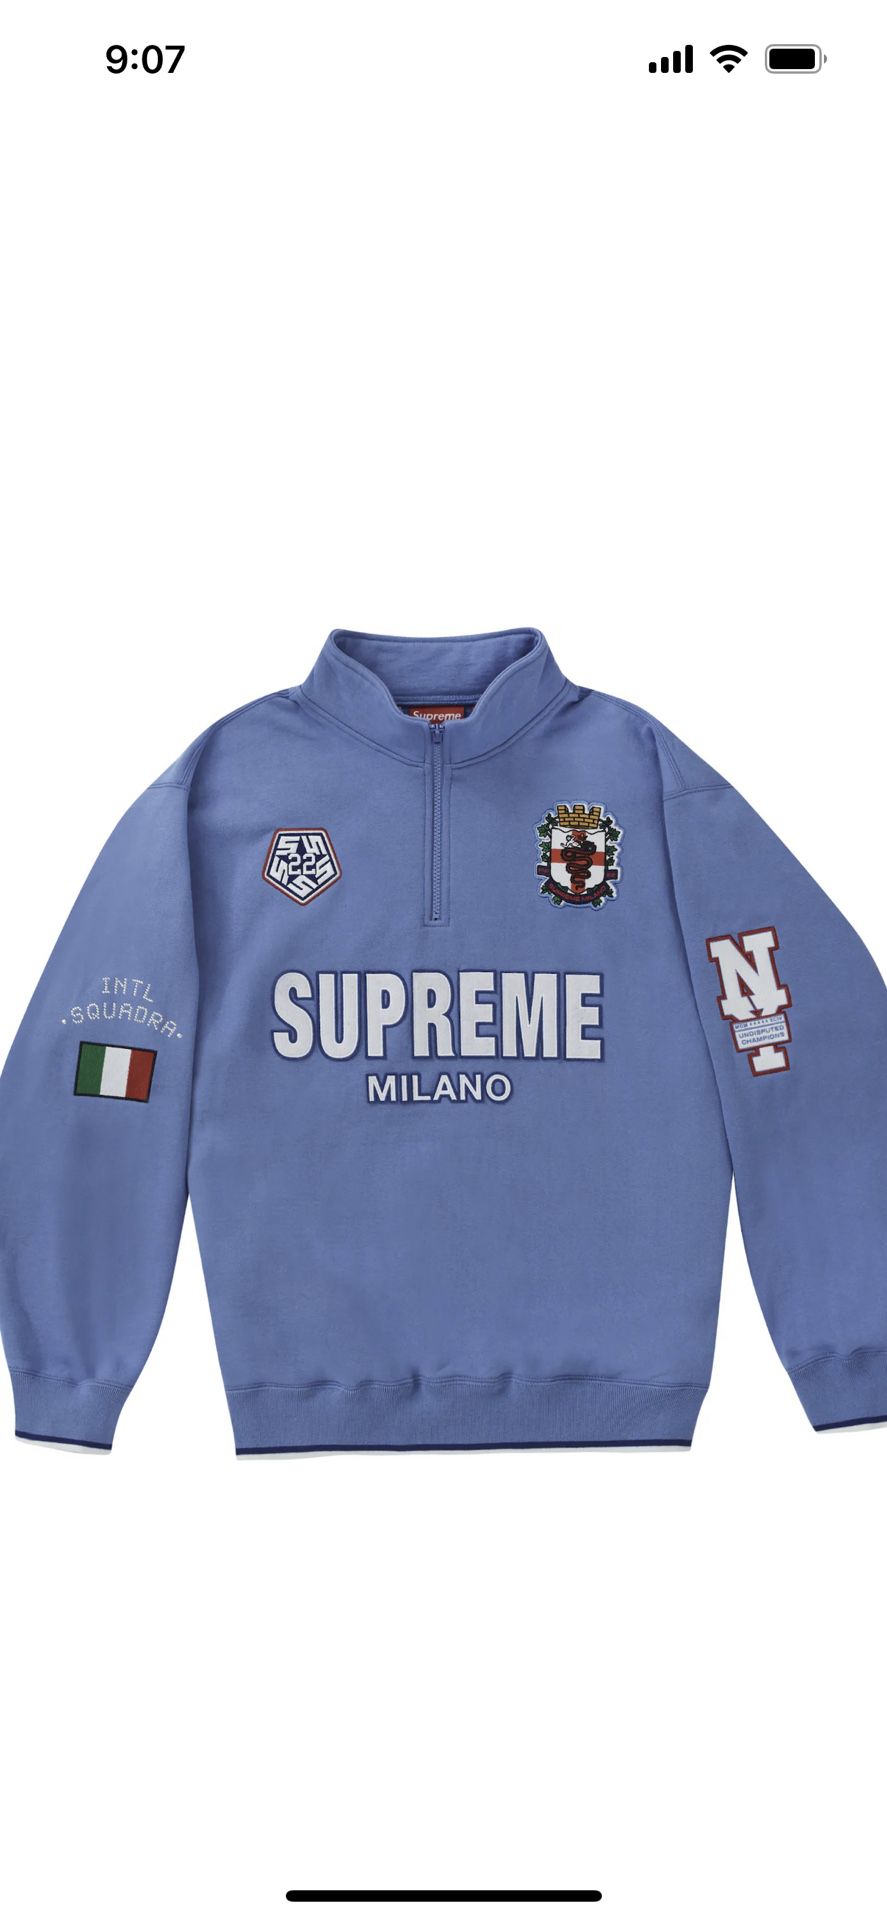 Supreme Milano 